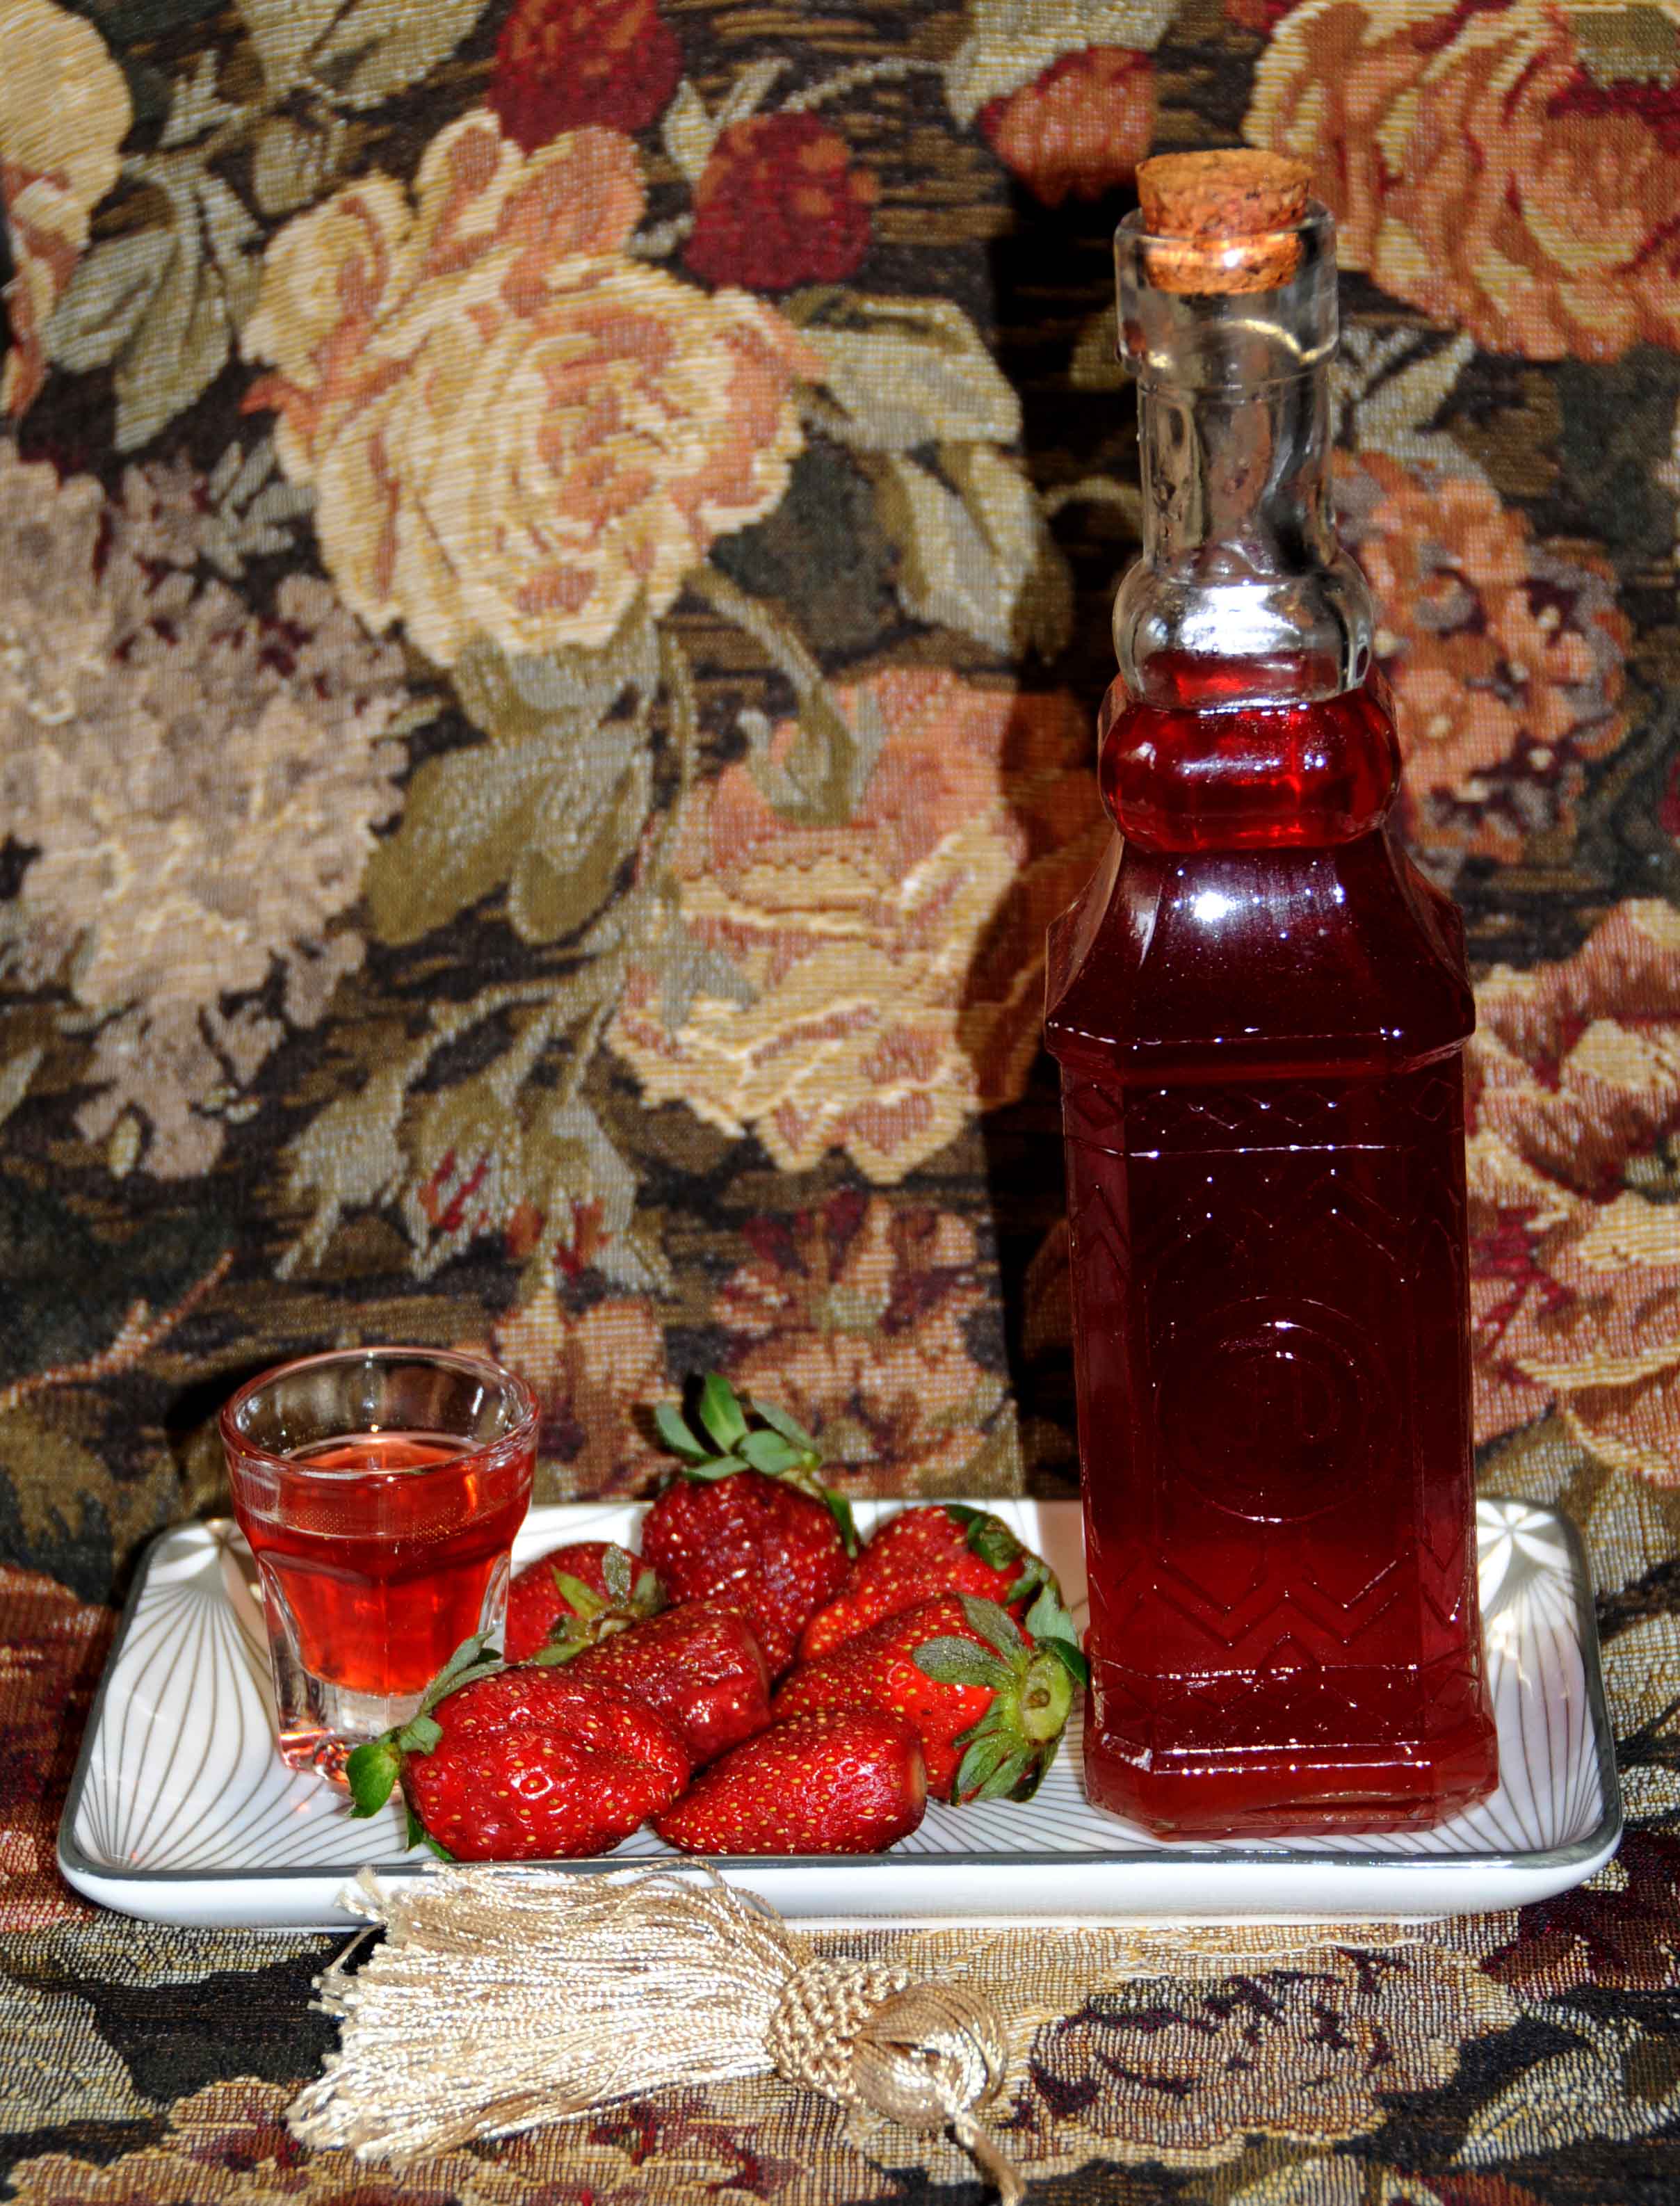 Λικέρ φράουλα - Strawberry liqueur